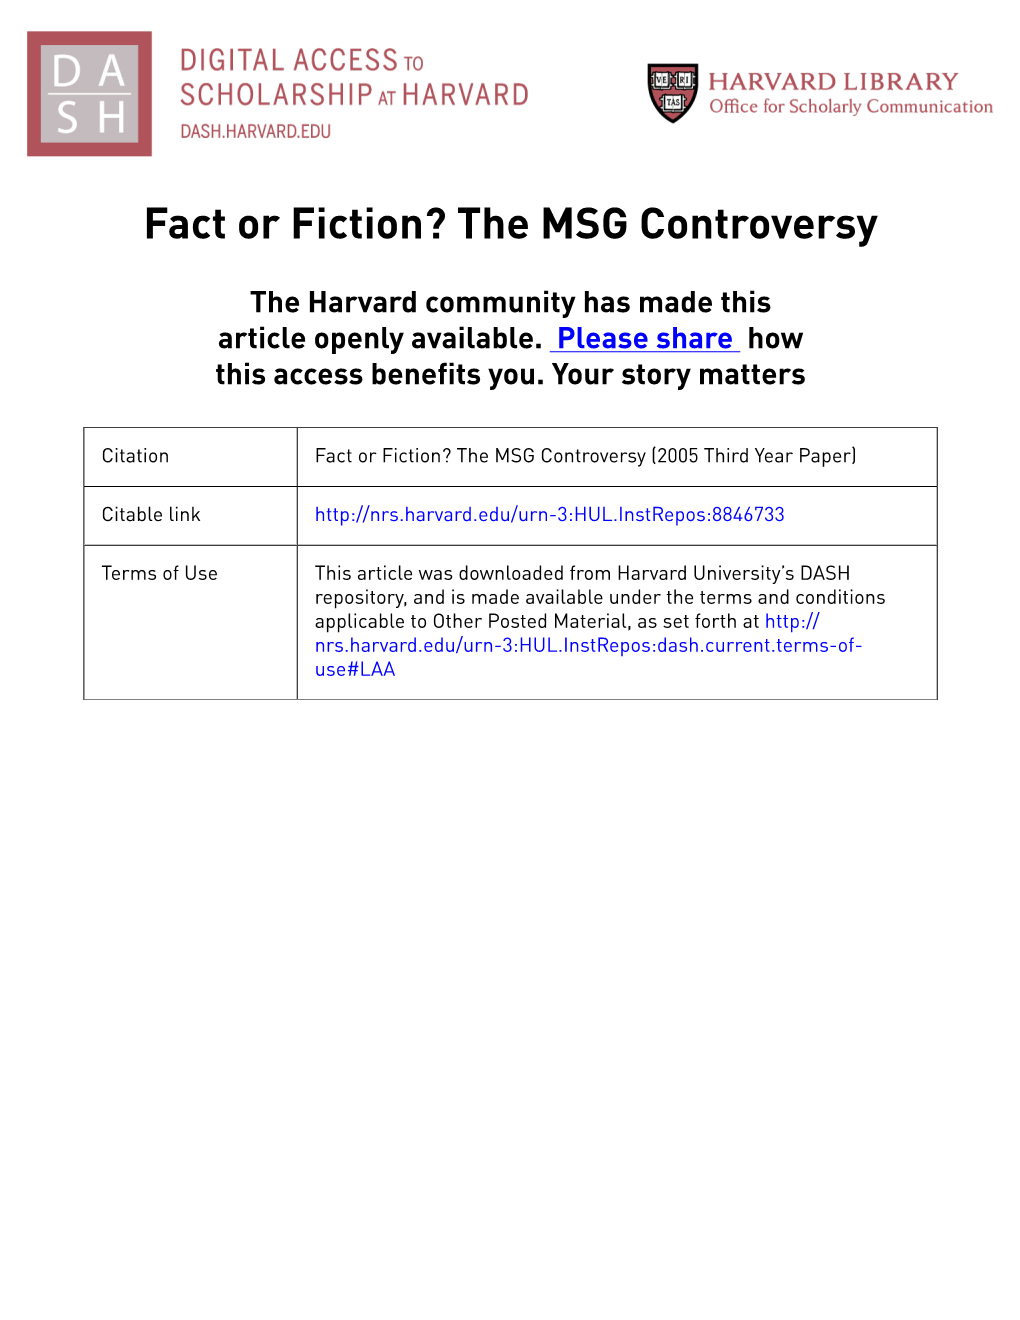 The MSG Controversy